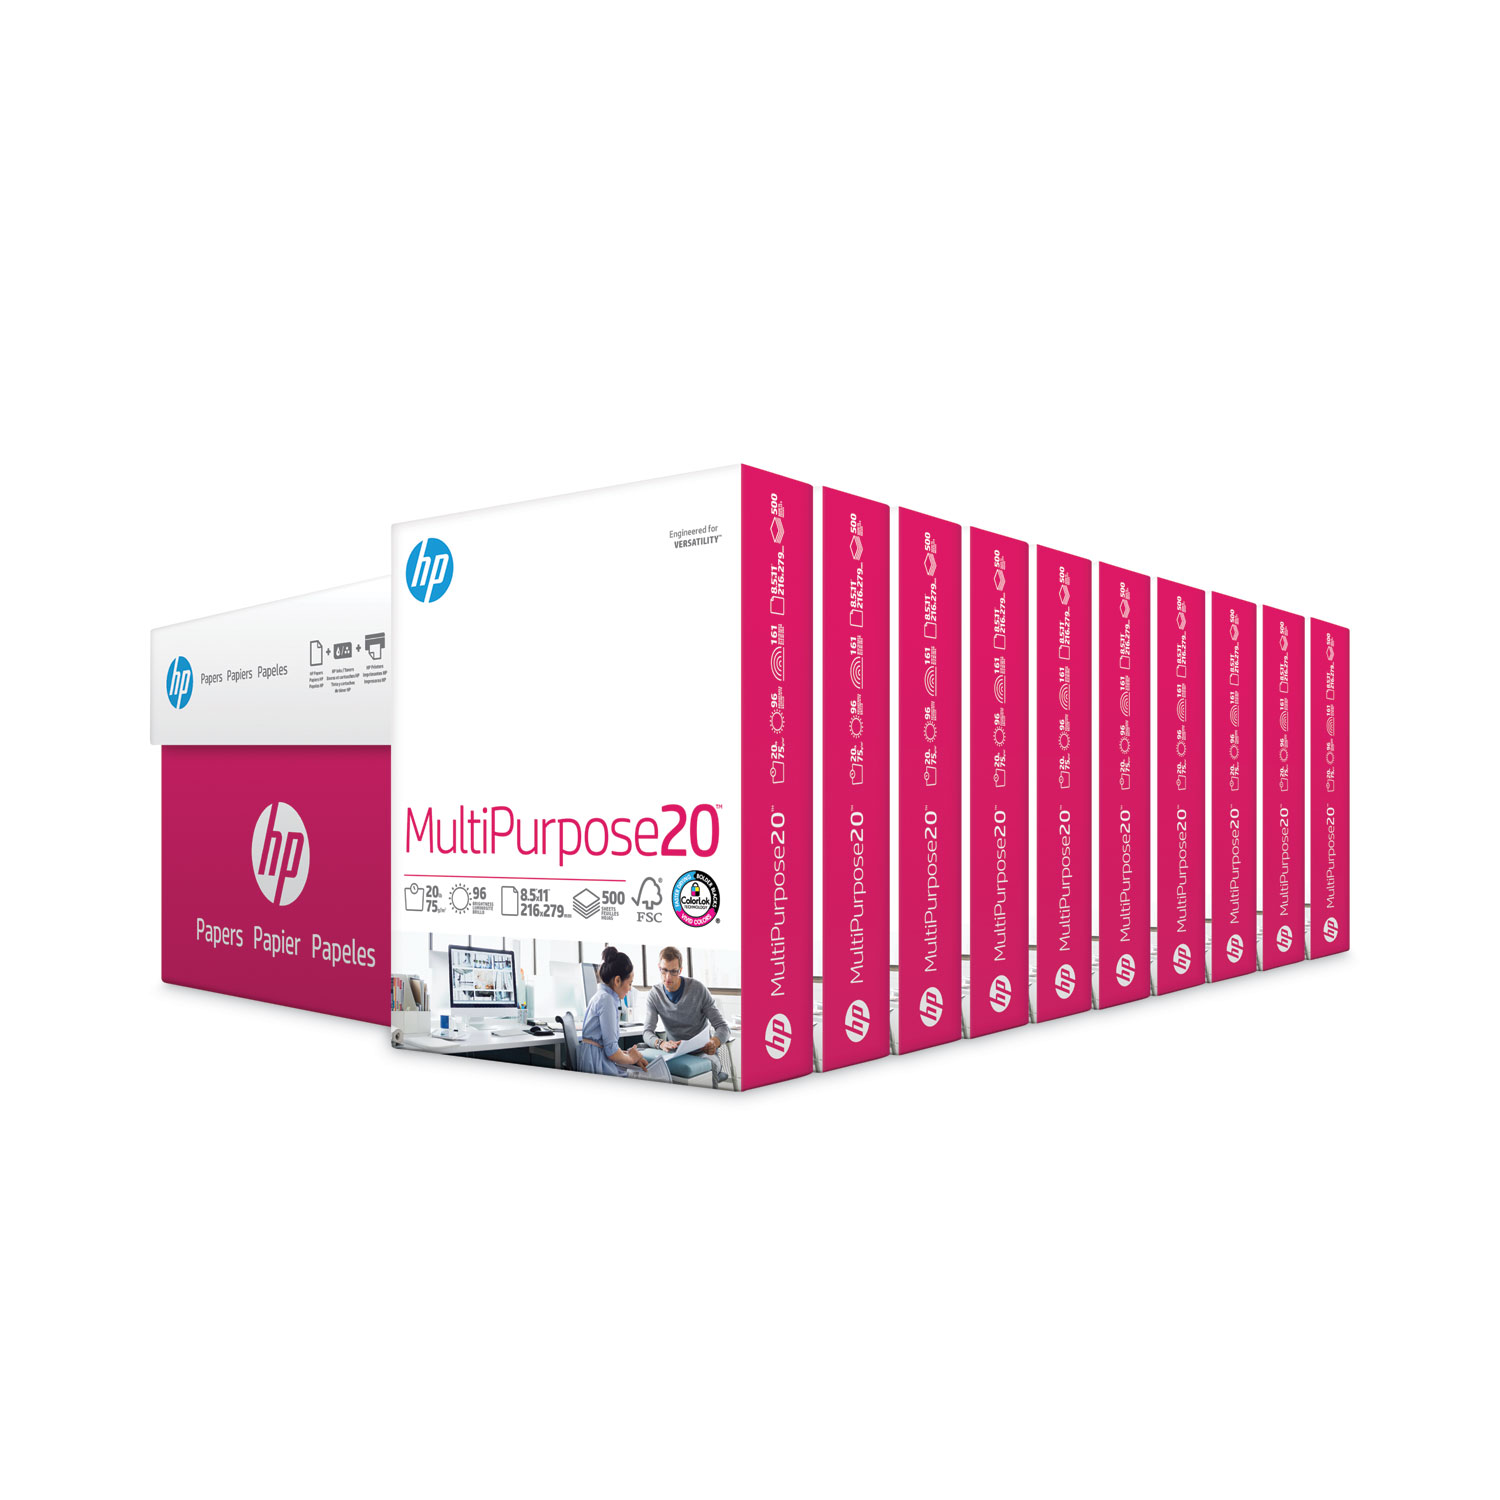 HP Paper Printer | 8.5 x 11 Paper | Premium 32 lb | 1 Ream - 500 Sheets |  100 Bright | Made in USA - FSC Certified | 113100R